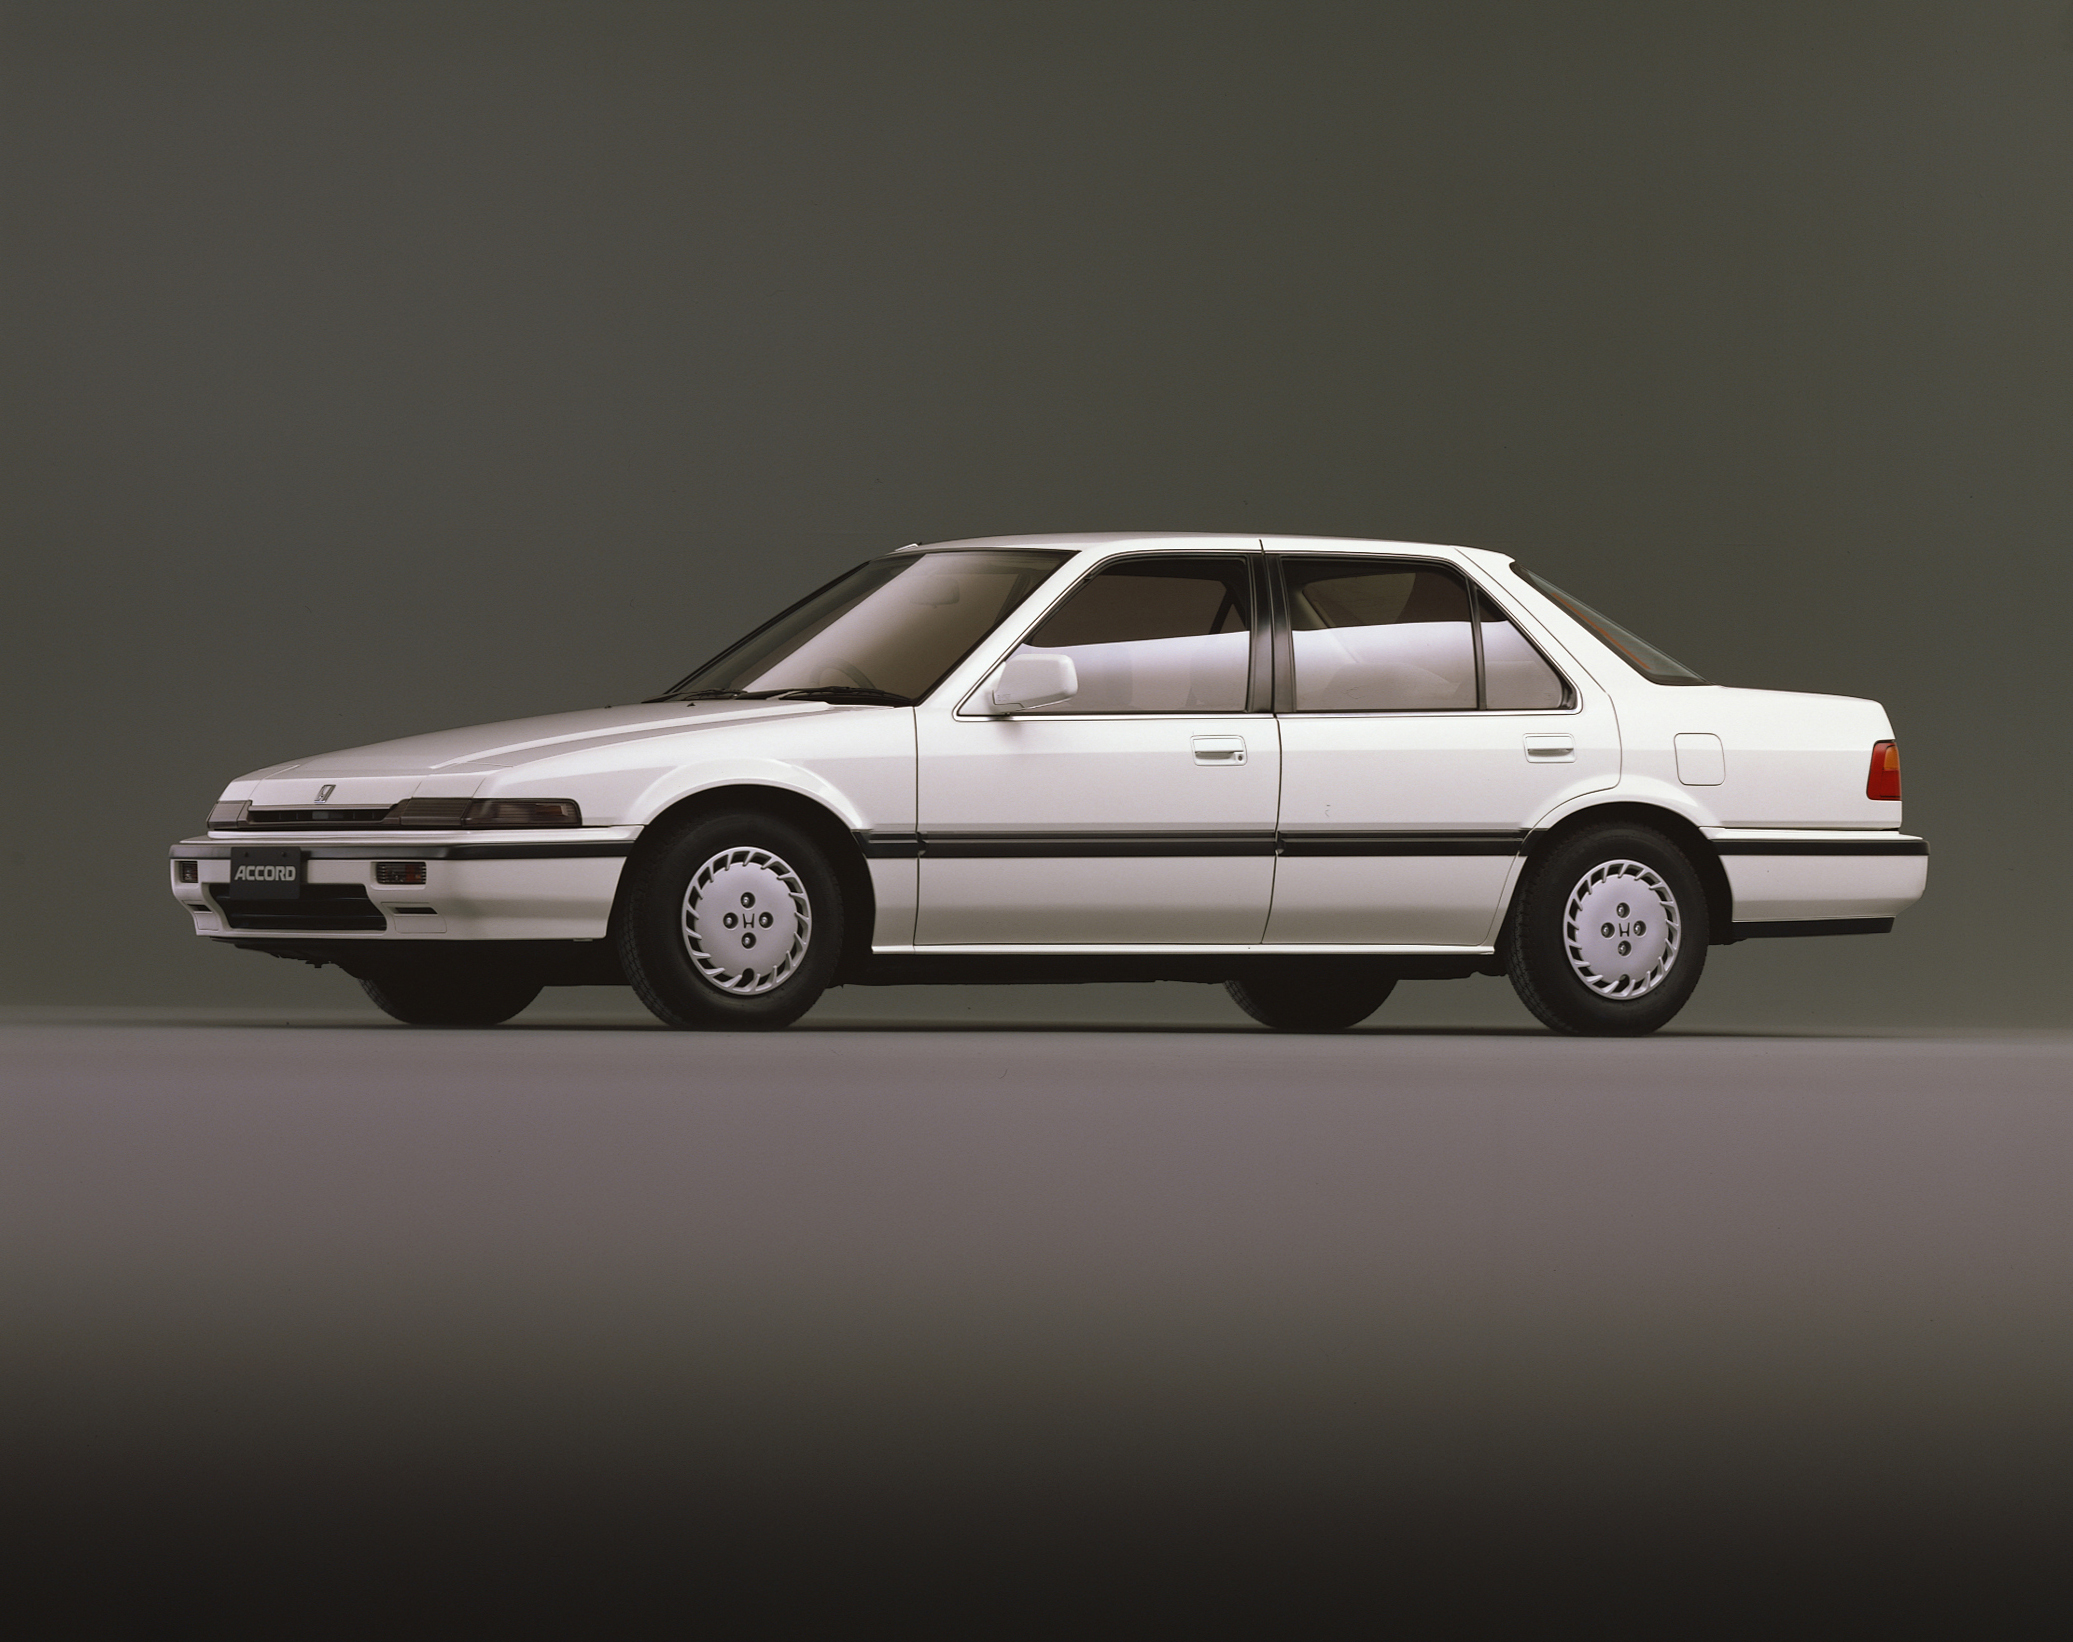 Honda History Honda 歴代アコード 1985 1990年 3代目アコード セダンシリーズ 写真 19年 ホワイトエディション Efエクストラ特別仕様車 19年 Ca ホワイトエディション 特別仕様車 19年 Ca 2 0si Exclusive 追加 19年 2 0